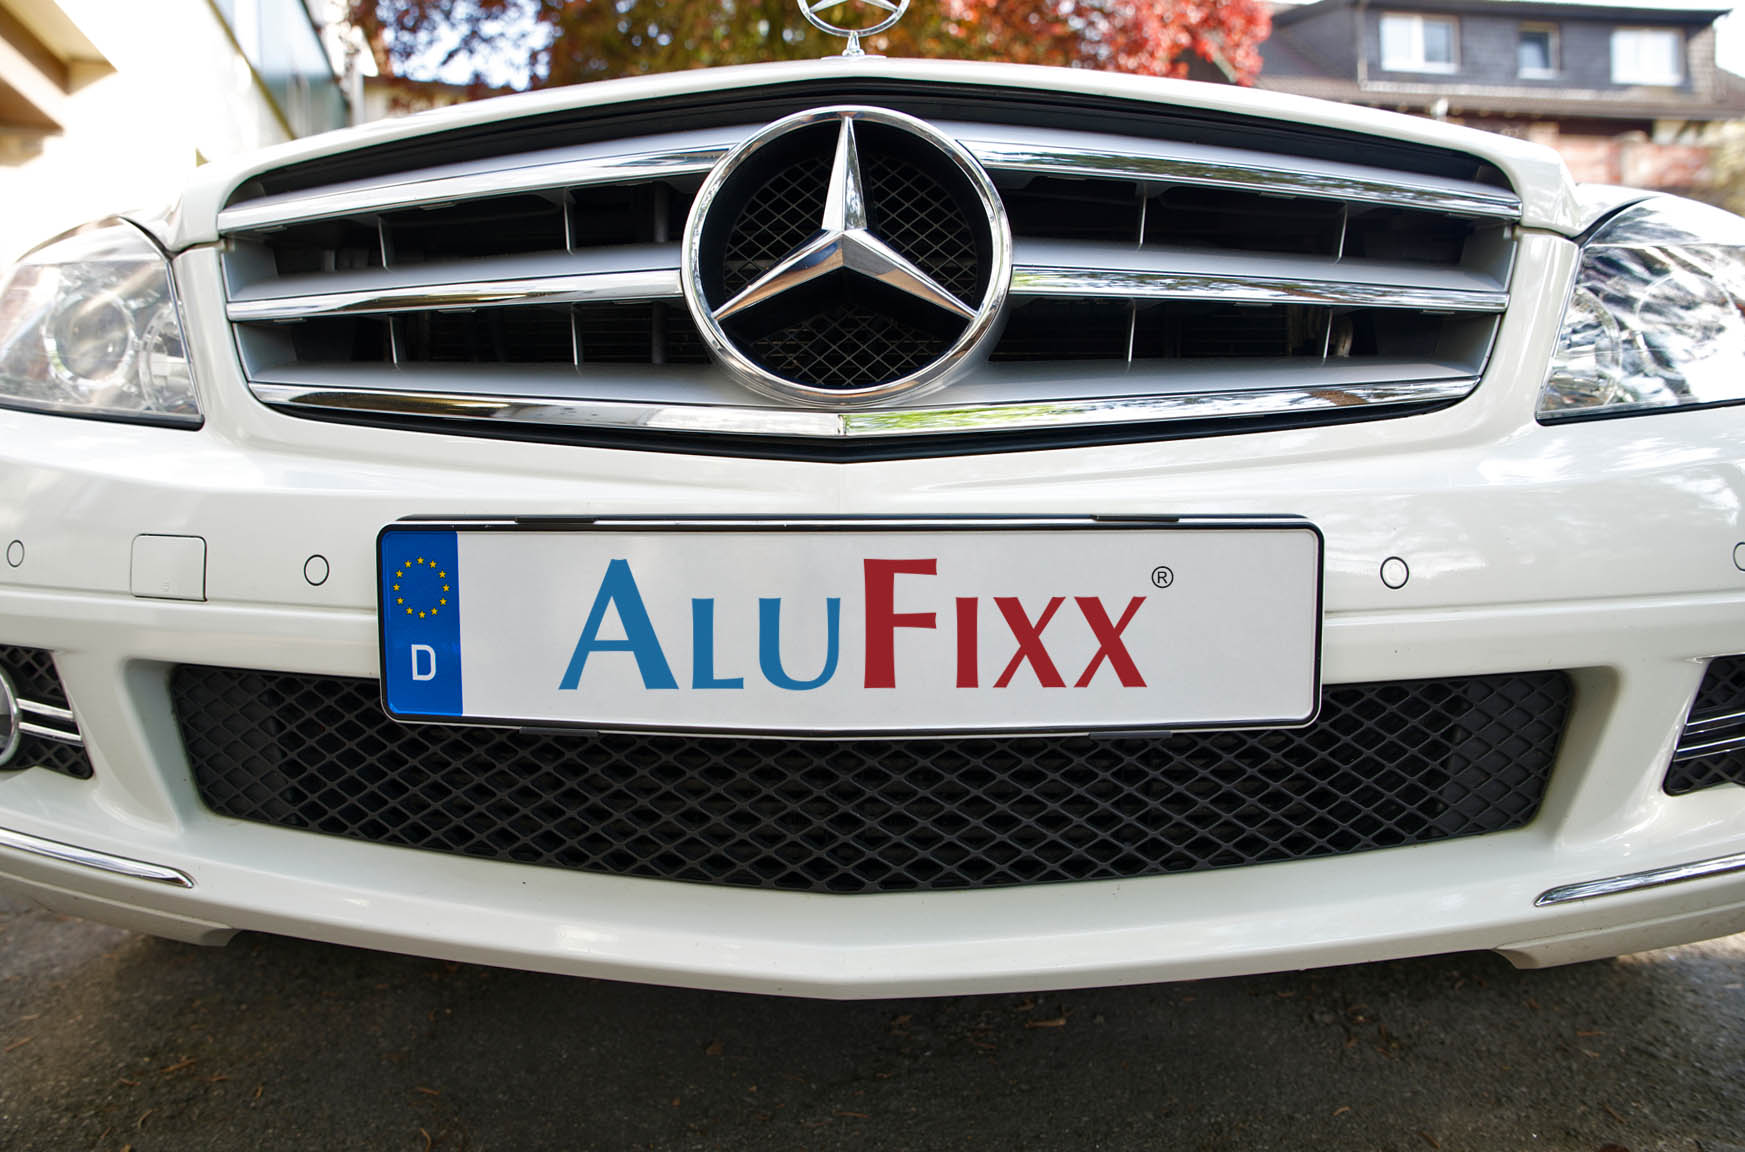 AluFixx Bike Kennzeichenhalter schwarz matt eloxiert, Bremsen